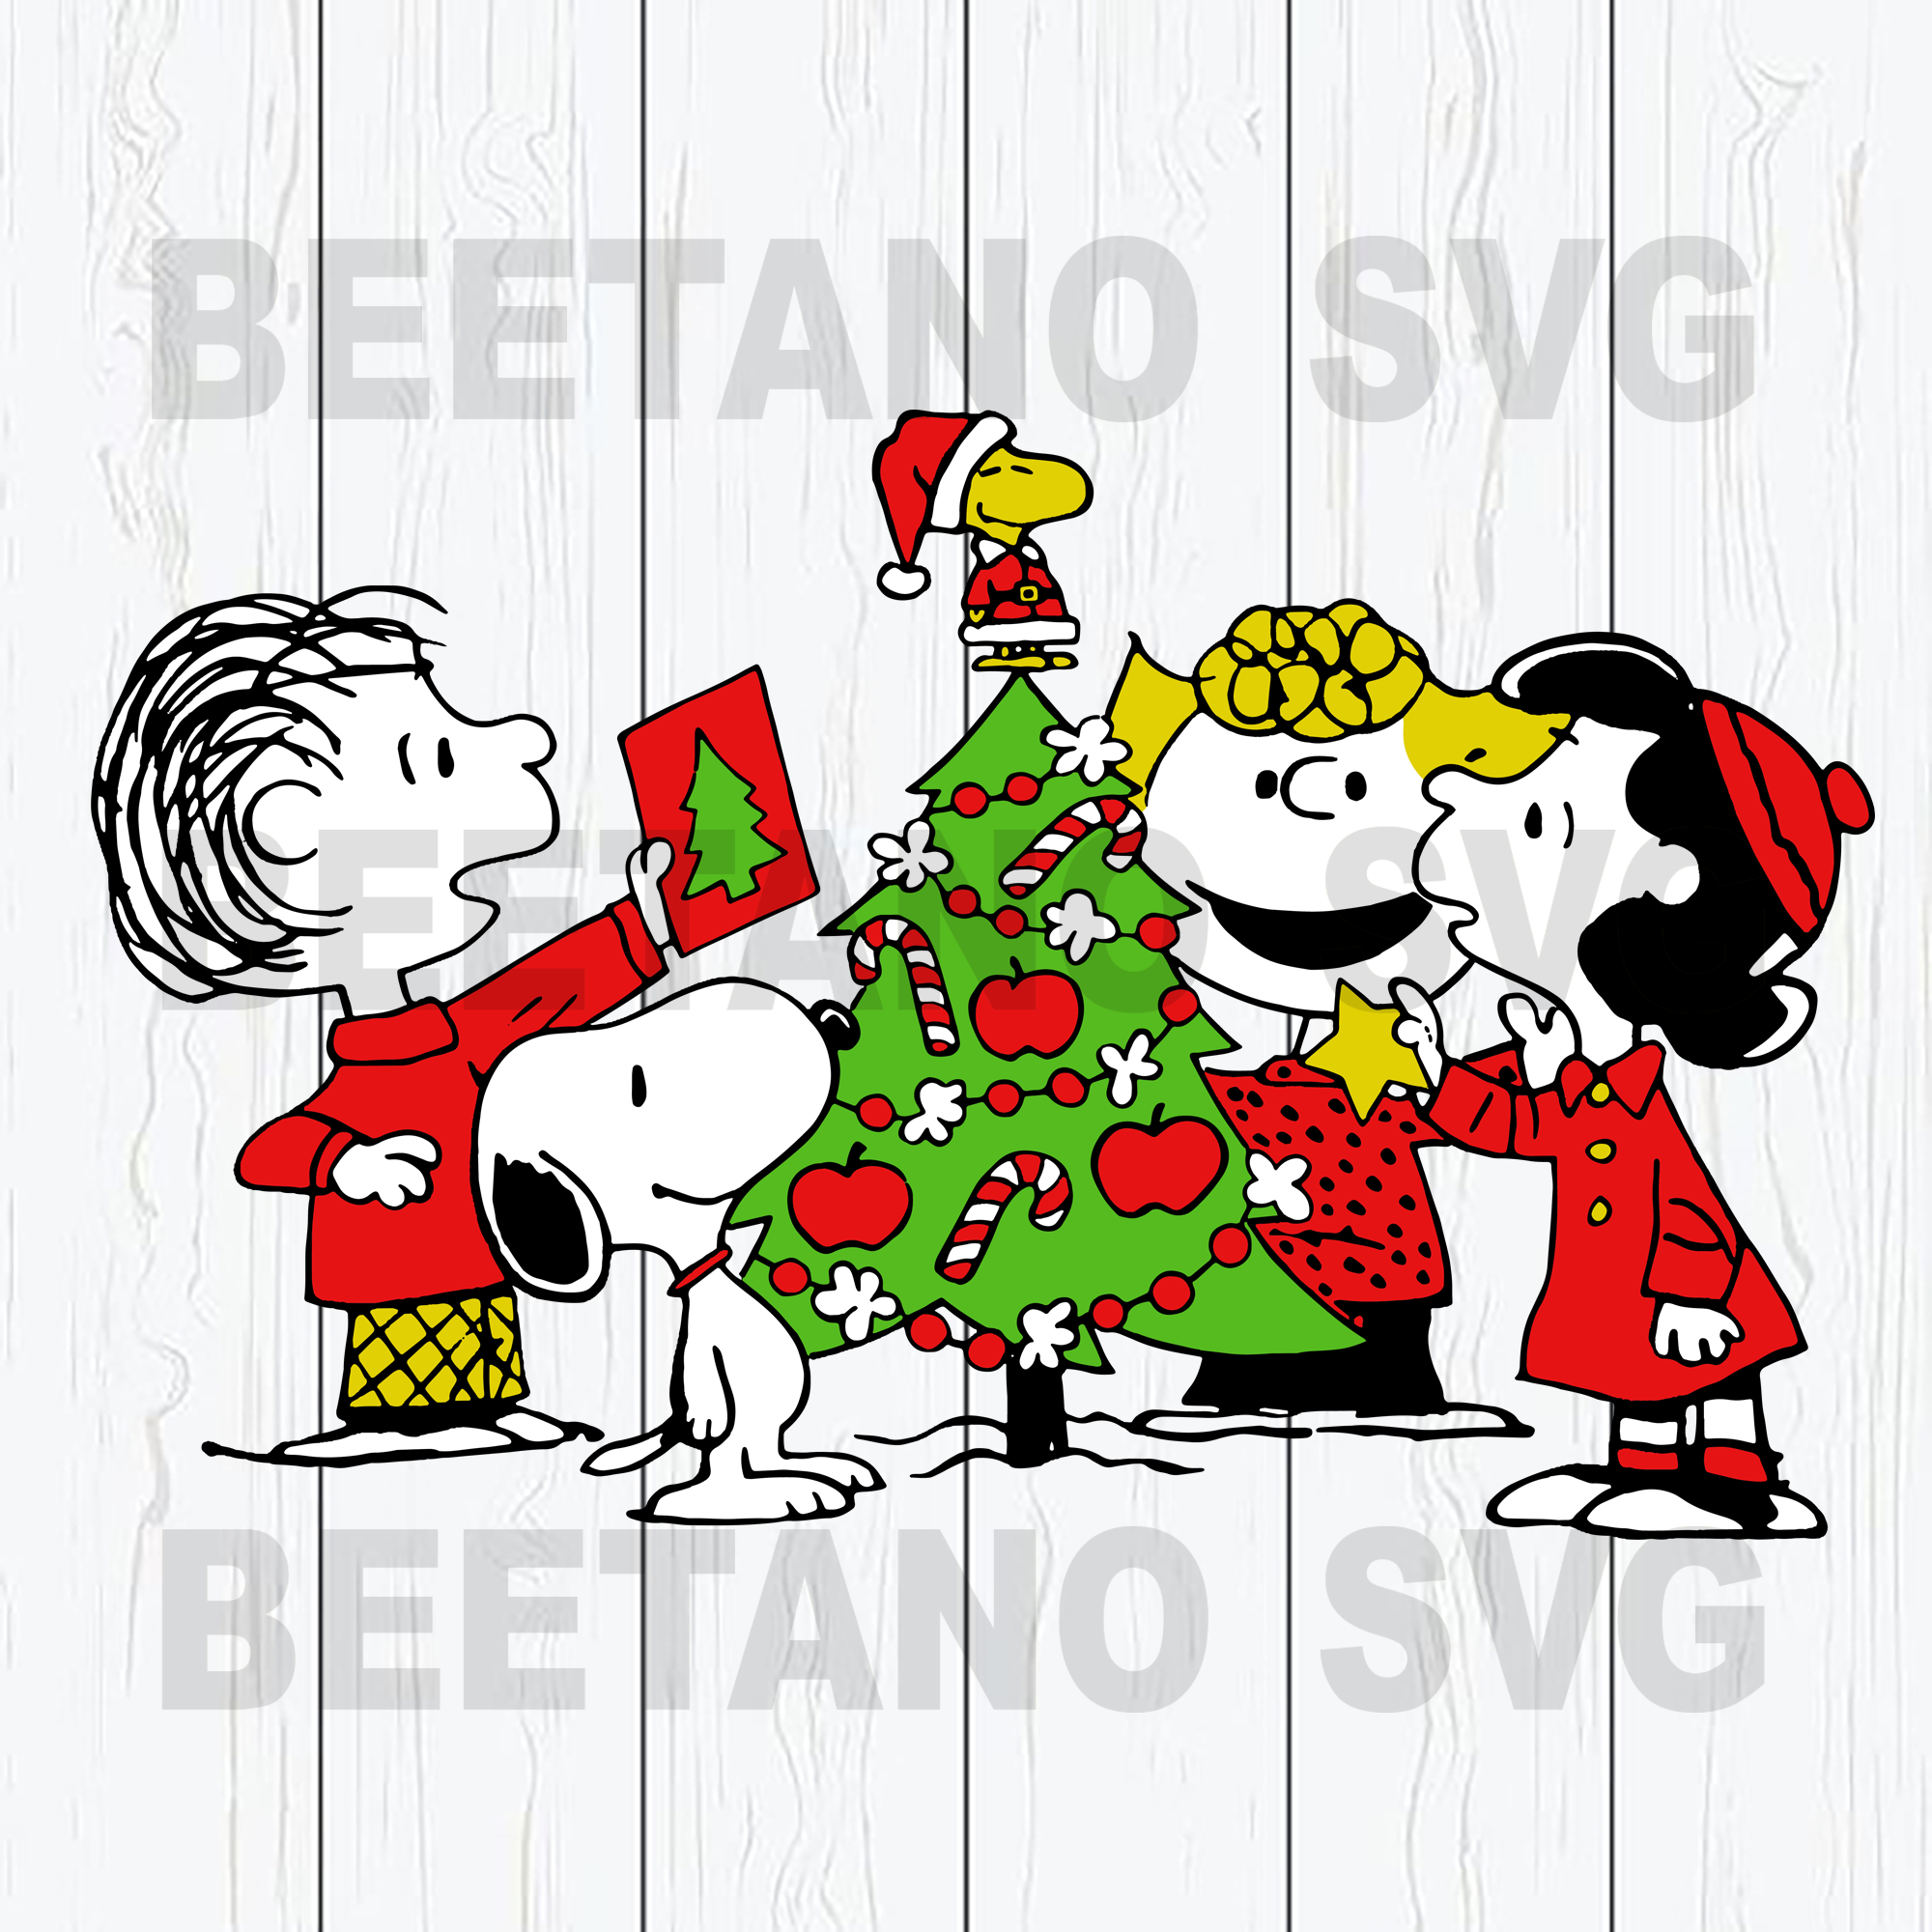 Download Snoopy Christmas Svg Charlie Brown Svg Joe Cool Svg Christmas Tree Beetanosvg Scalable Vector Graphics